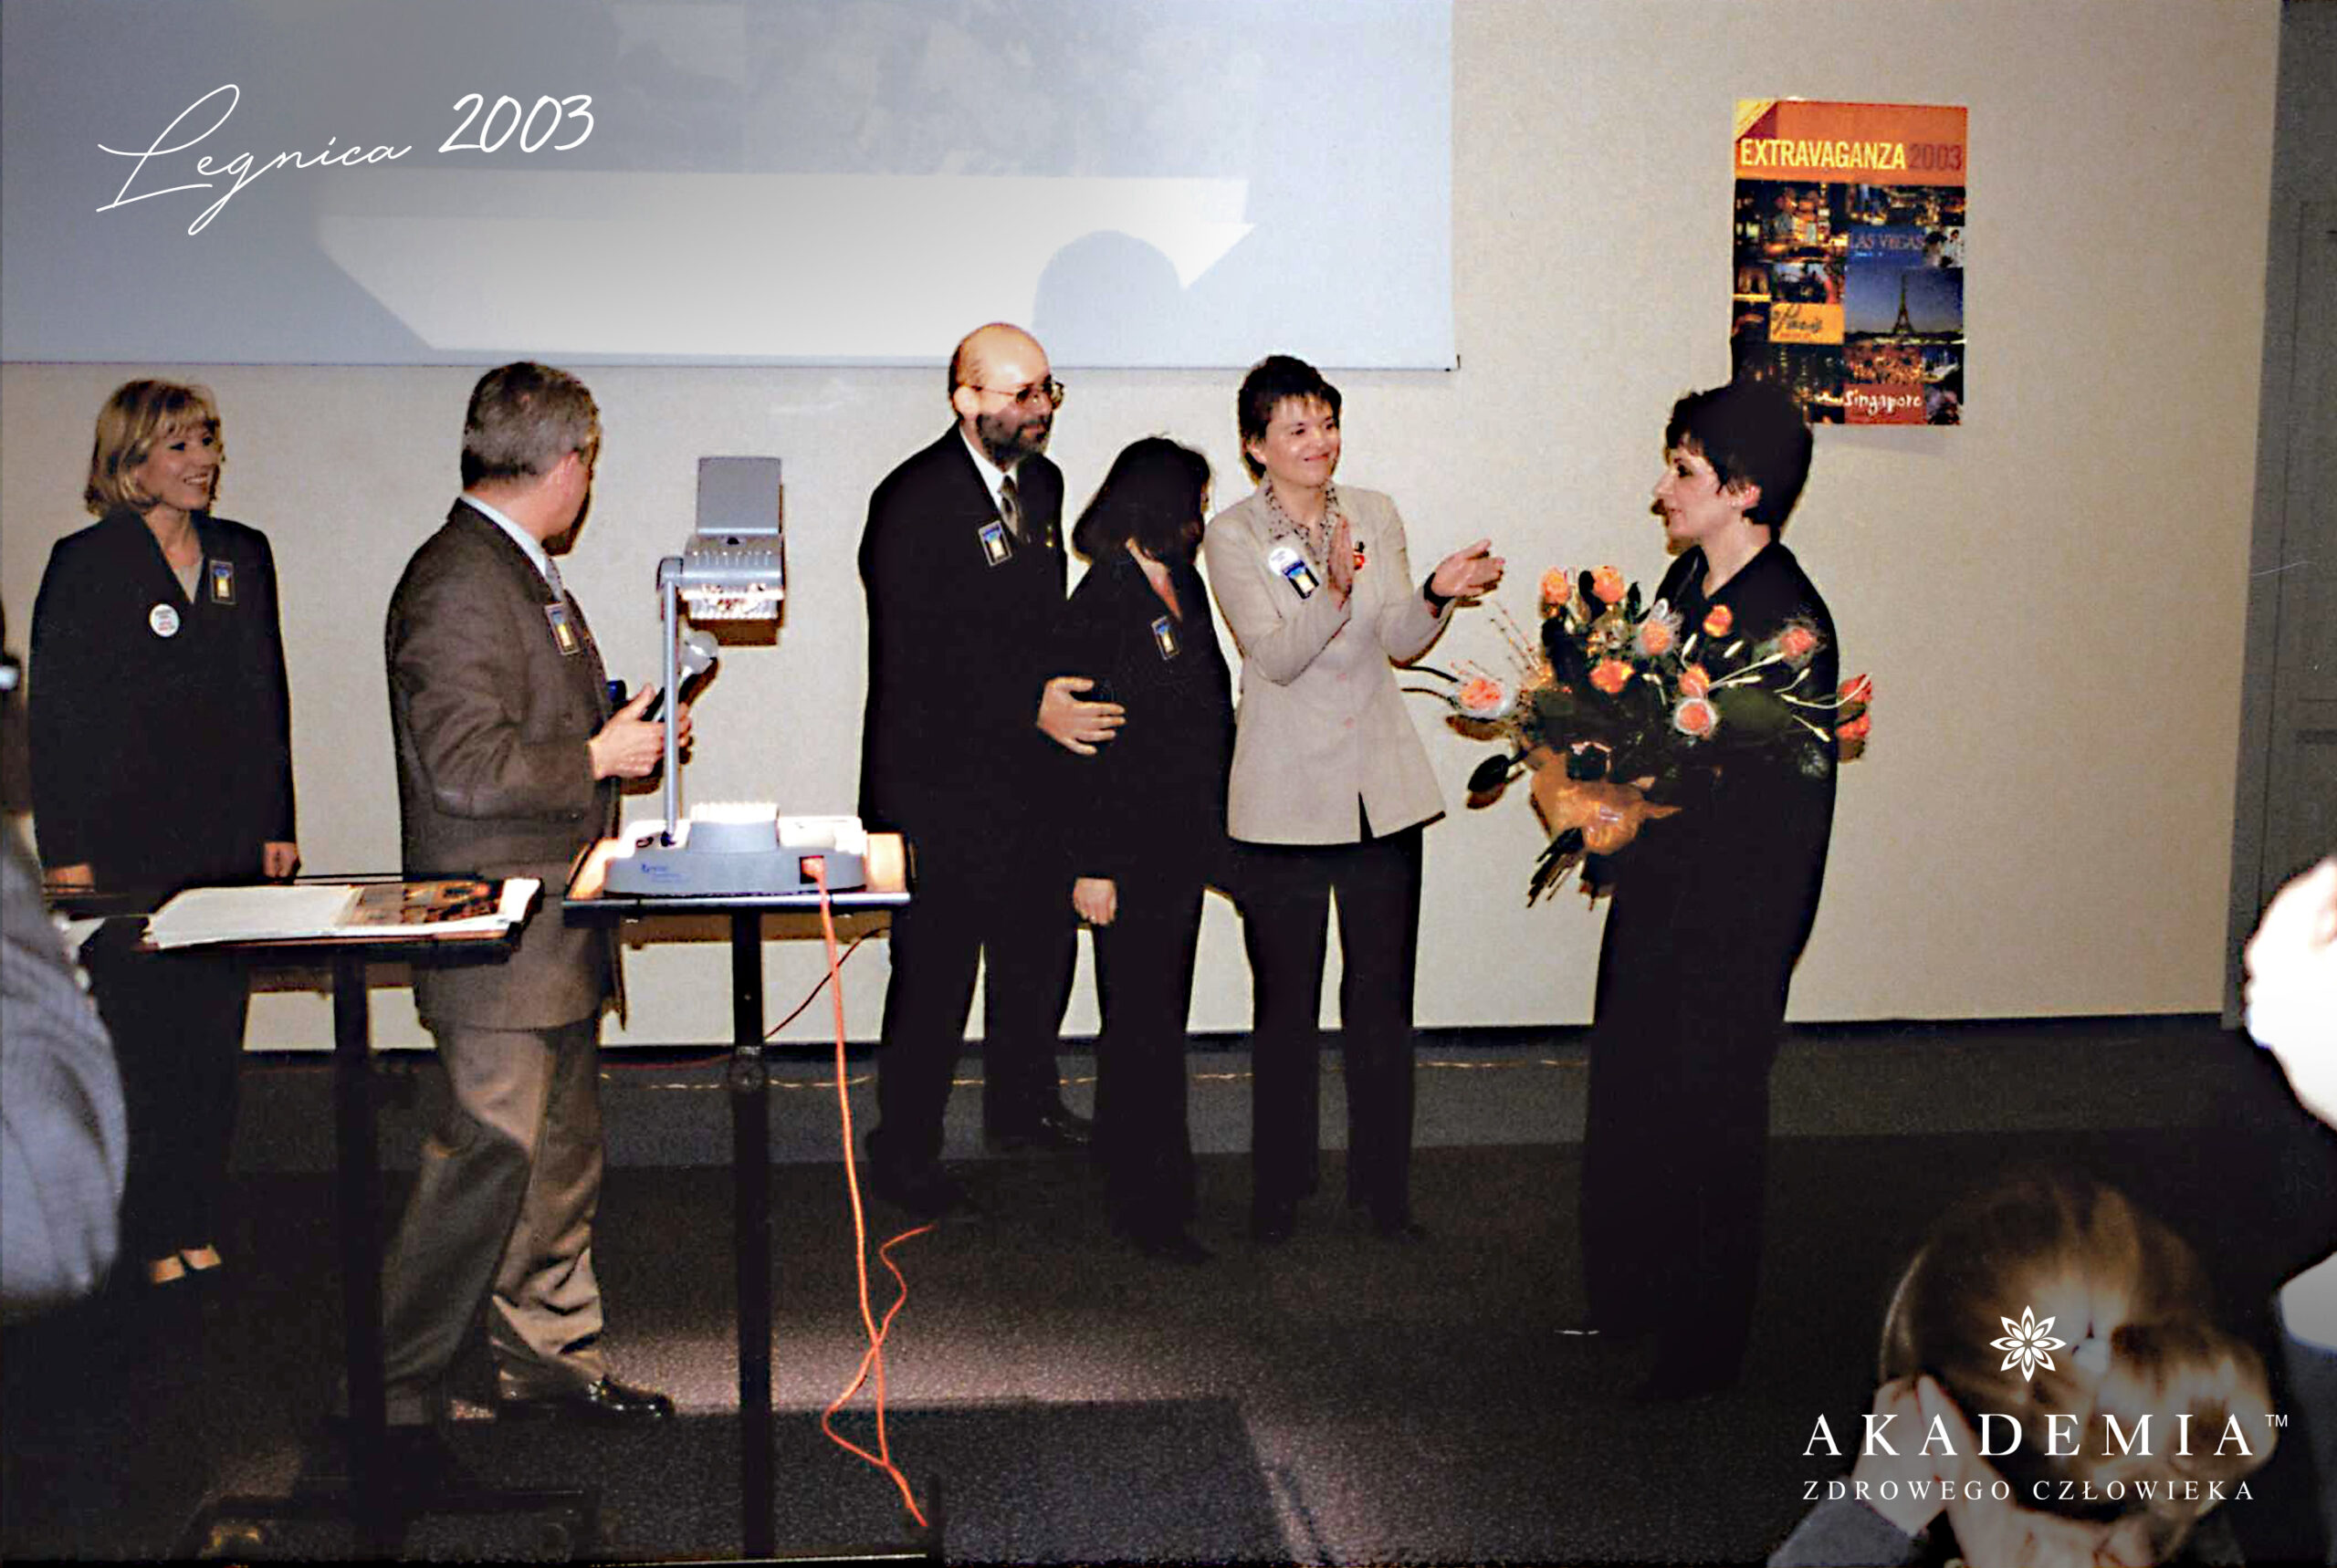 Akademia Zdrowego Człowieka, Legnica, 2003